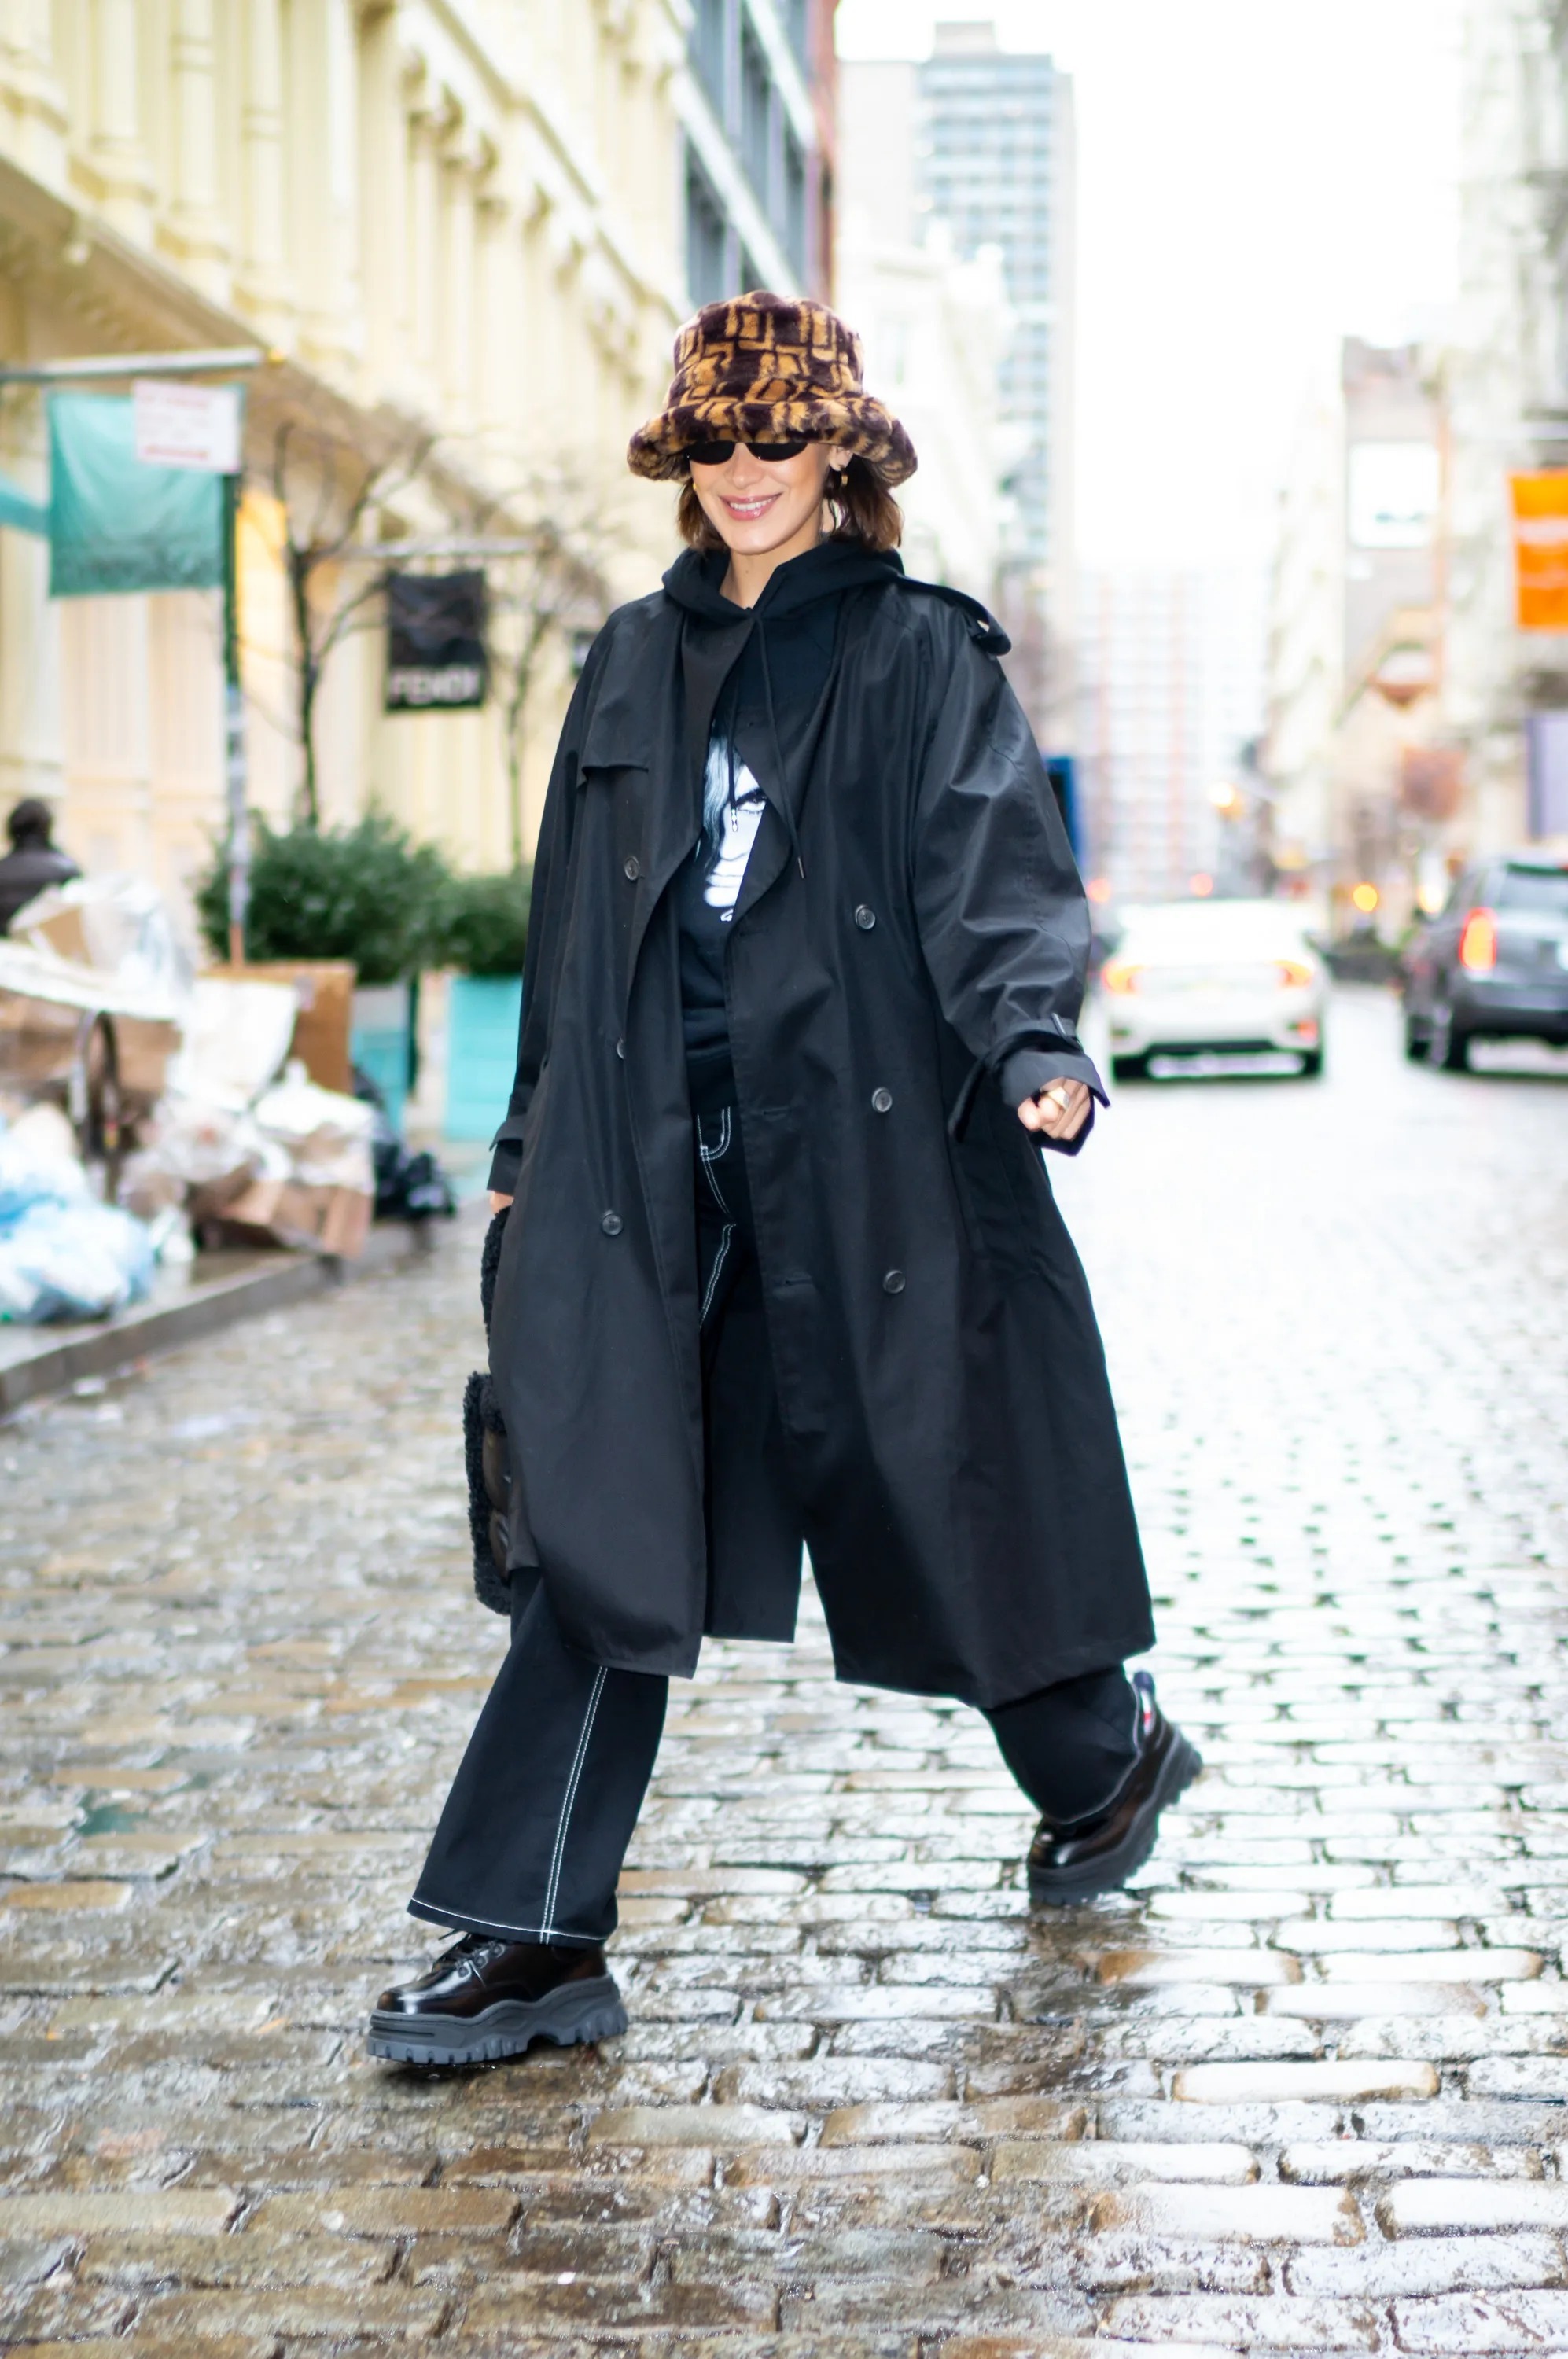 Кайли Дженнер показала самую модную шапку этой зимы: как стильно носить головной убор